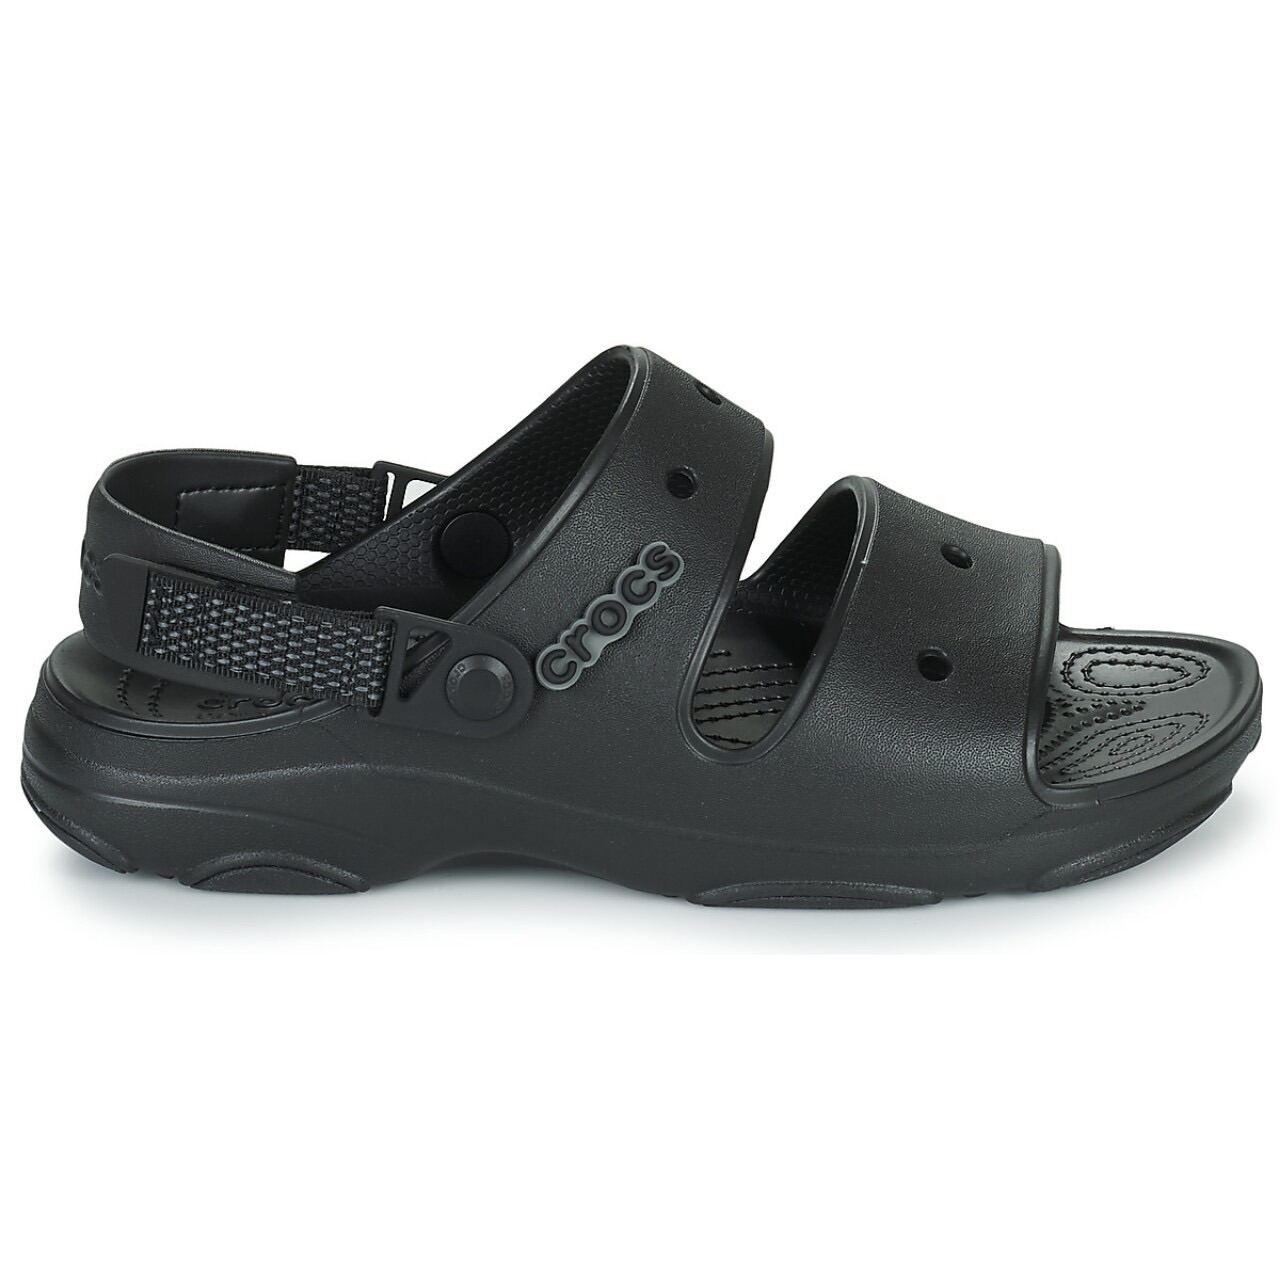 Dép sandal crocs nhựa mềm, hàng chính hãng, xuất khẩu xịn, crocs Ninh, giầy dép thời trang nam nữ